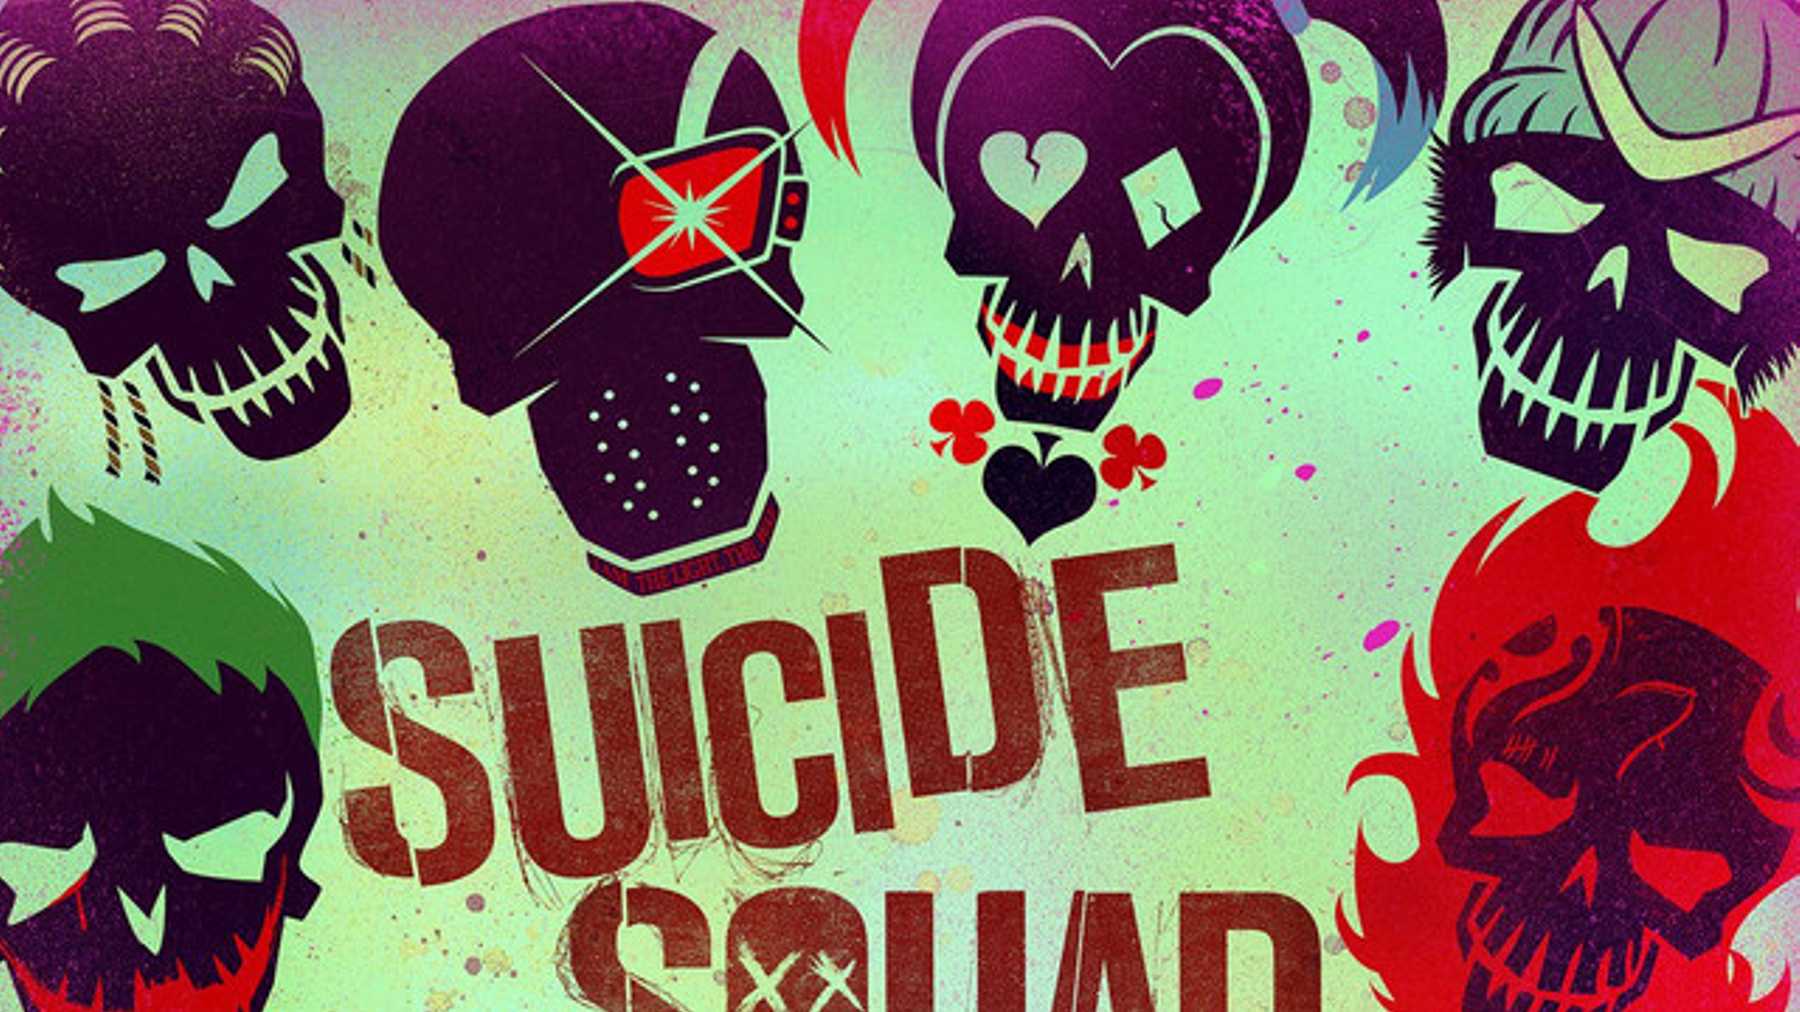 Suicide-Squad-soundtrack